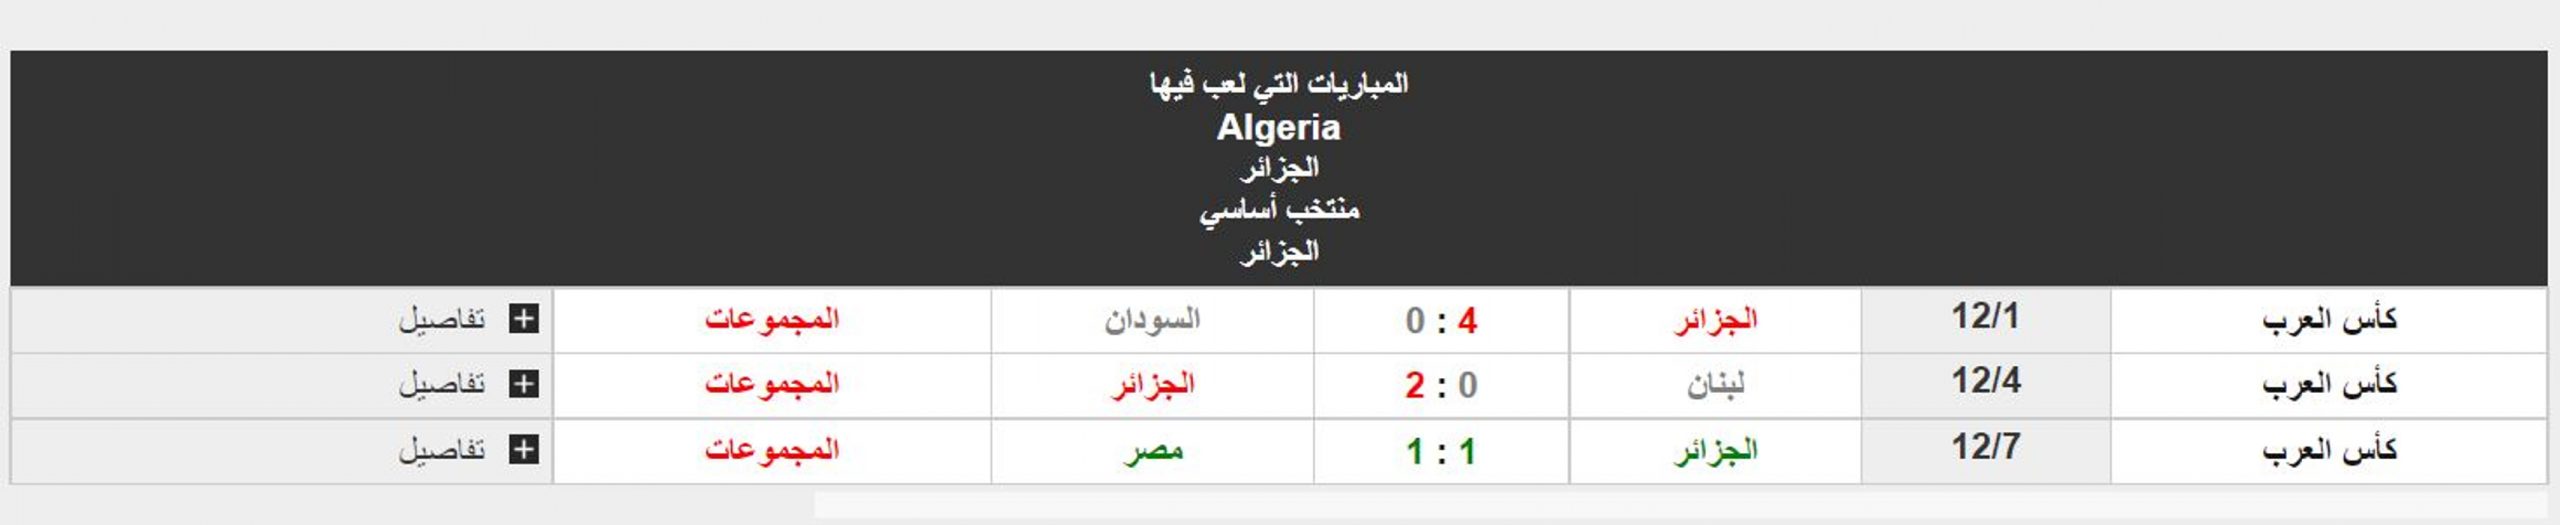 مباراة المغرب والجزائر نتائج منتخب الجزائر في دور المجموعات ببطولة كأس العرب